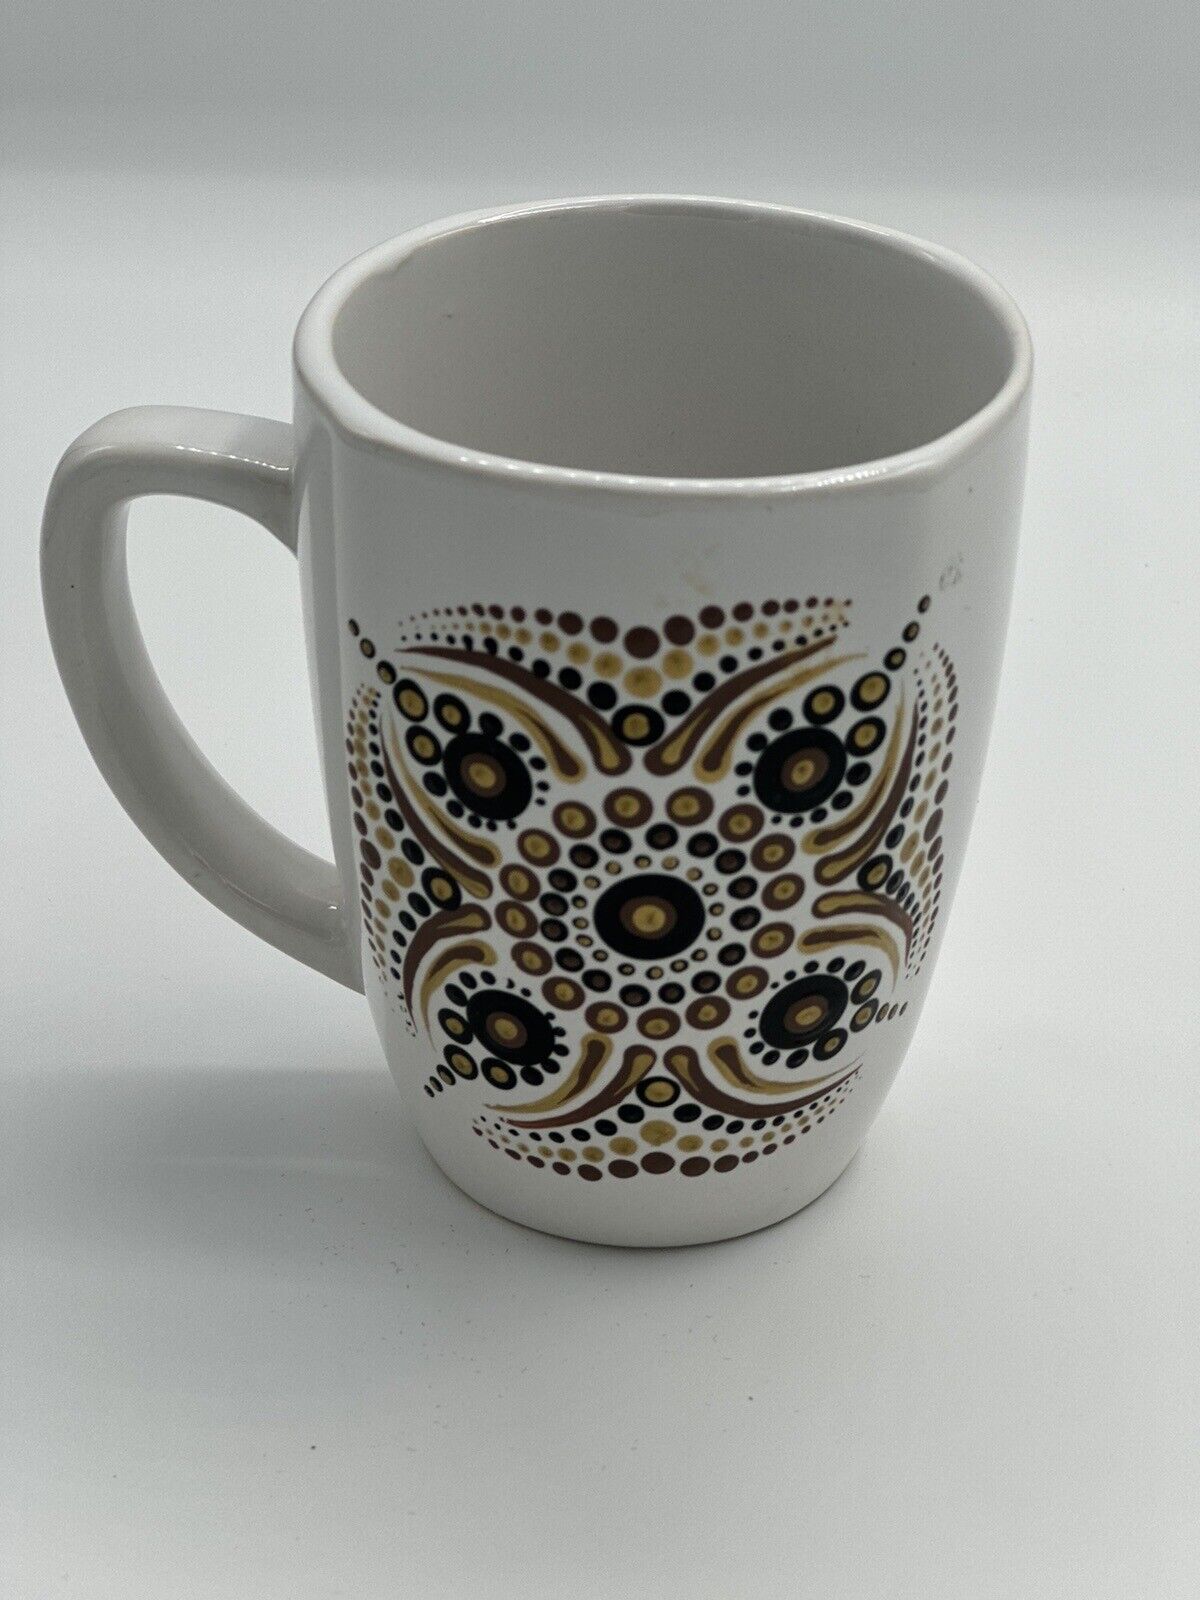 Dot Mandala Coffee Mug Dot Art Hand Painted Royal Norfolk Ceramic Boho White